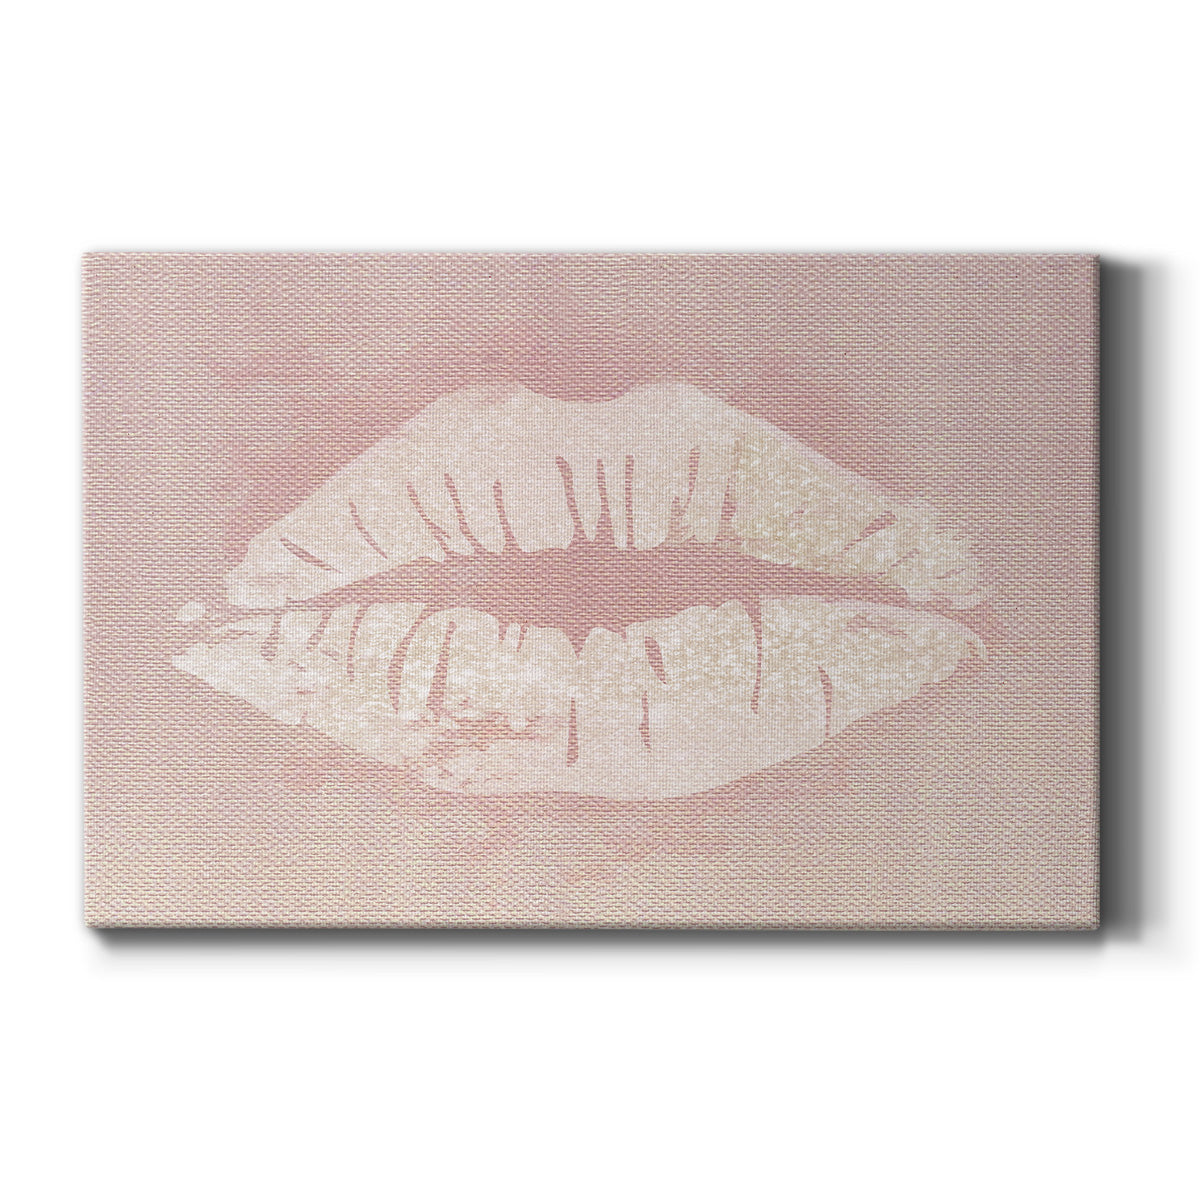 Printed Lips II